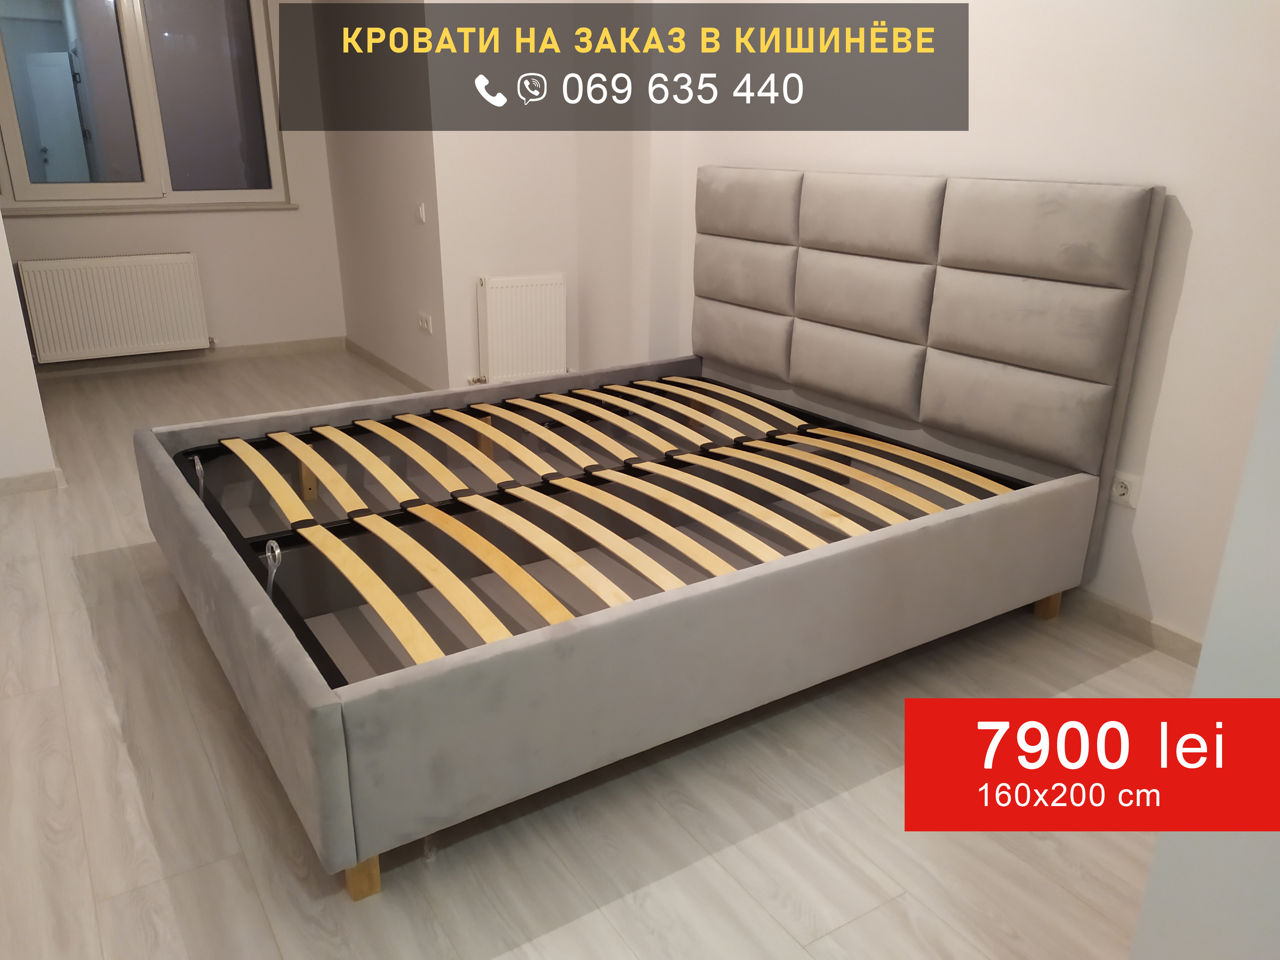 Кровать двуспальная 160х200см с подъемным механизмом = 7900 лей foto 10